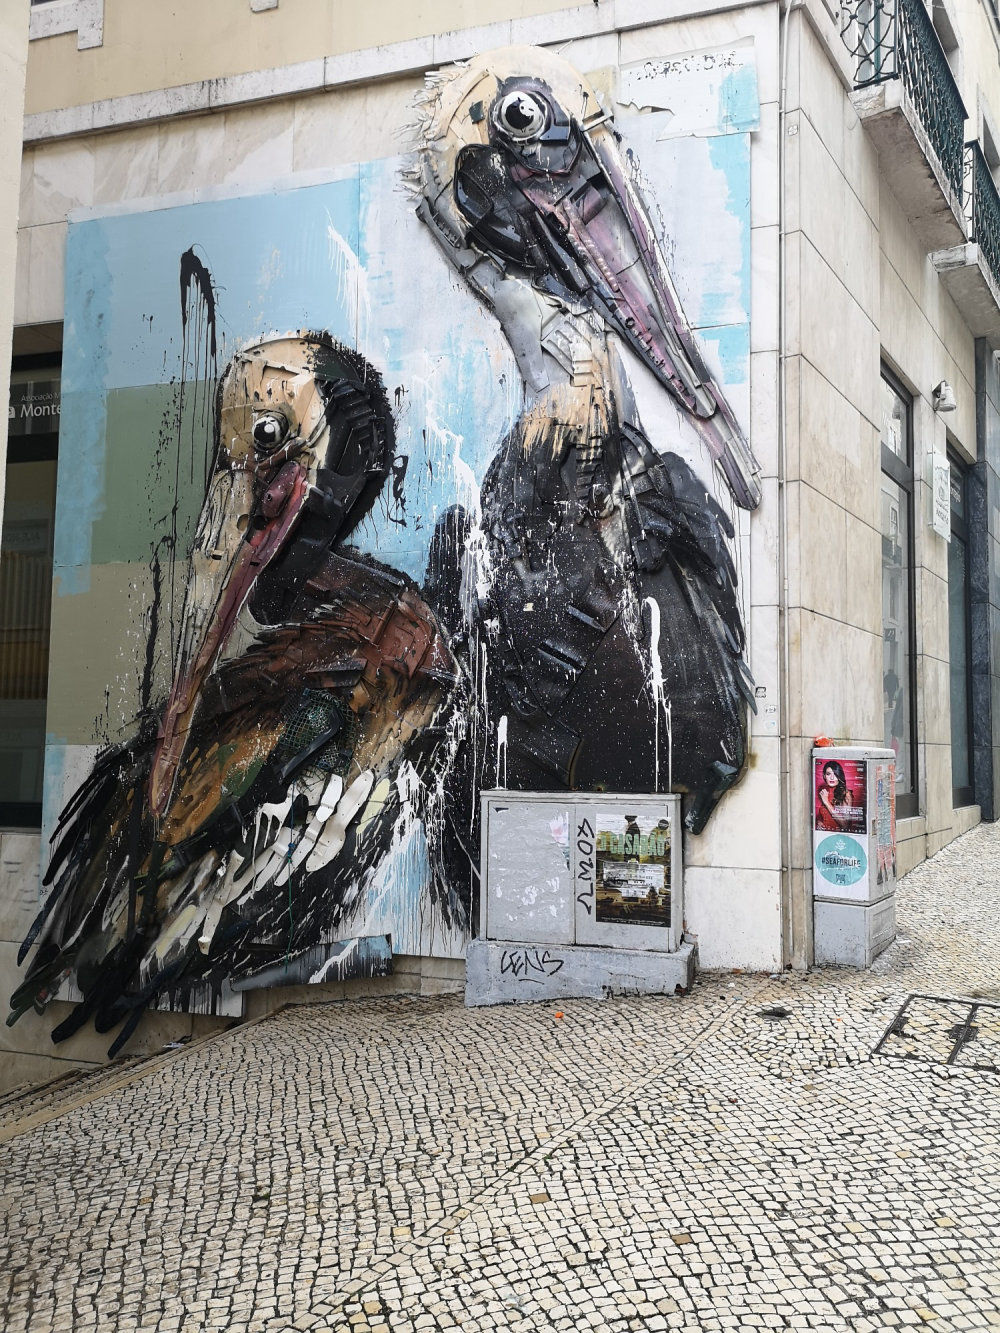 mural in Lisboa by artist Bordalo II.